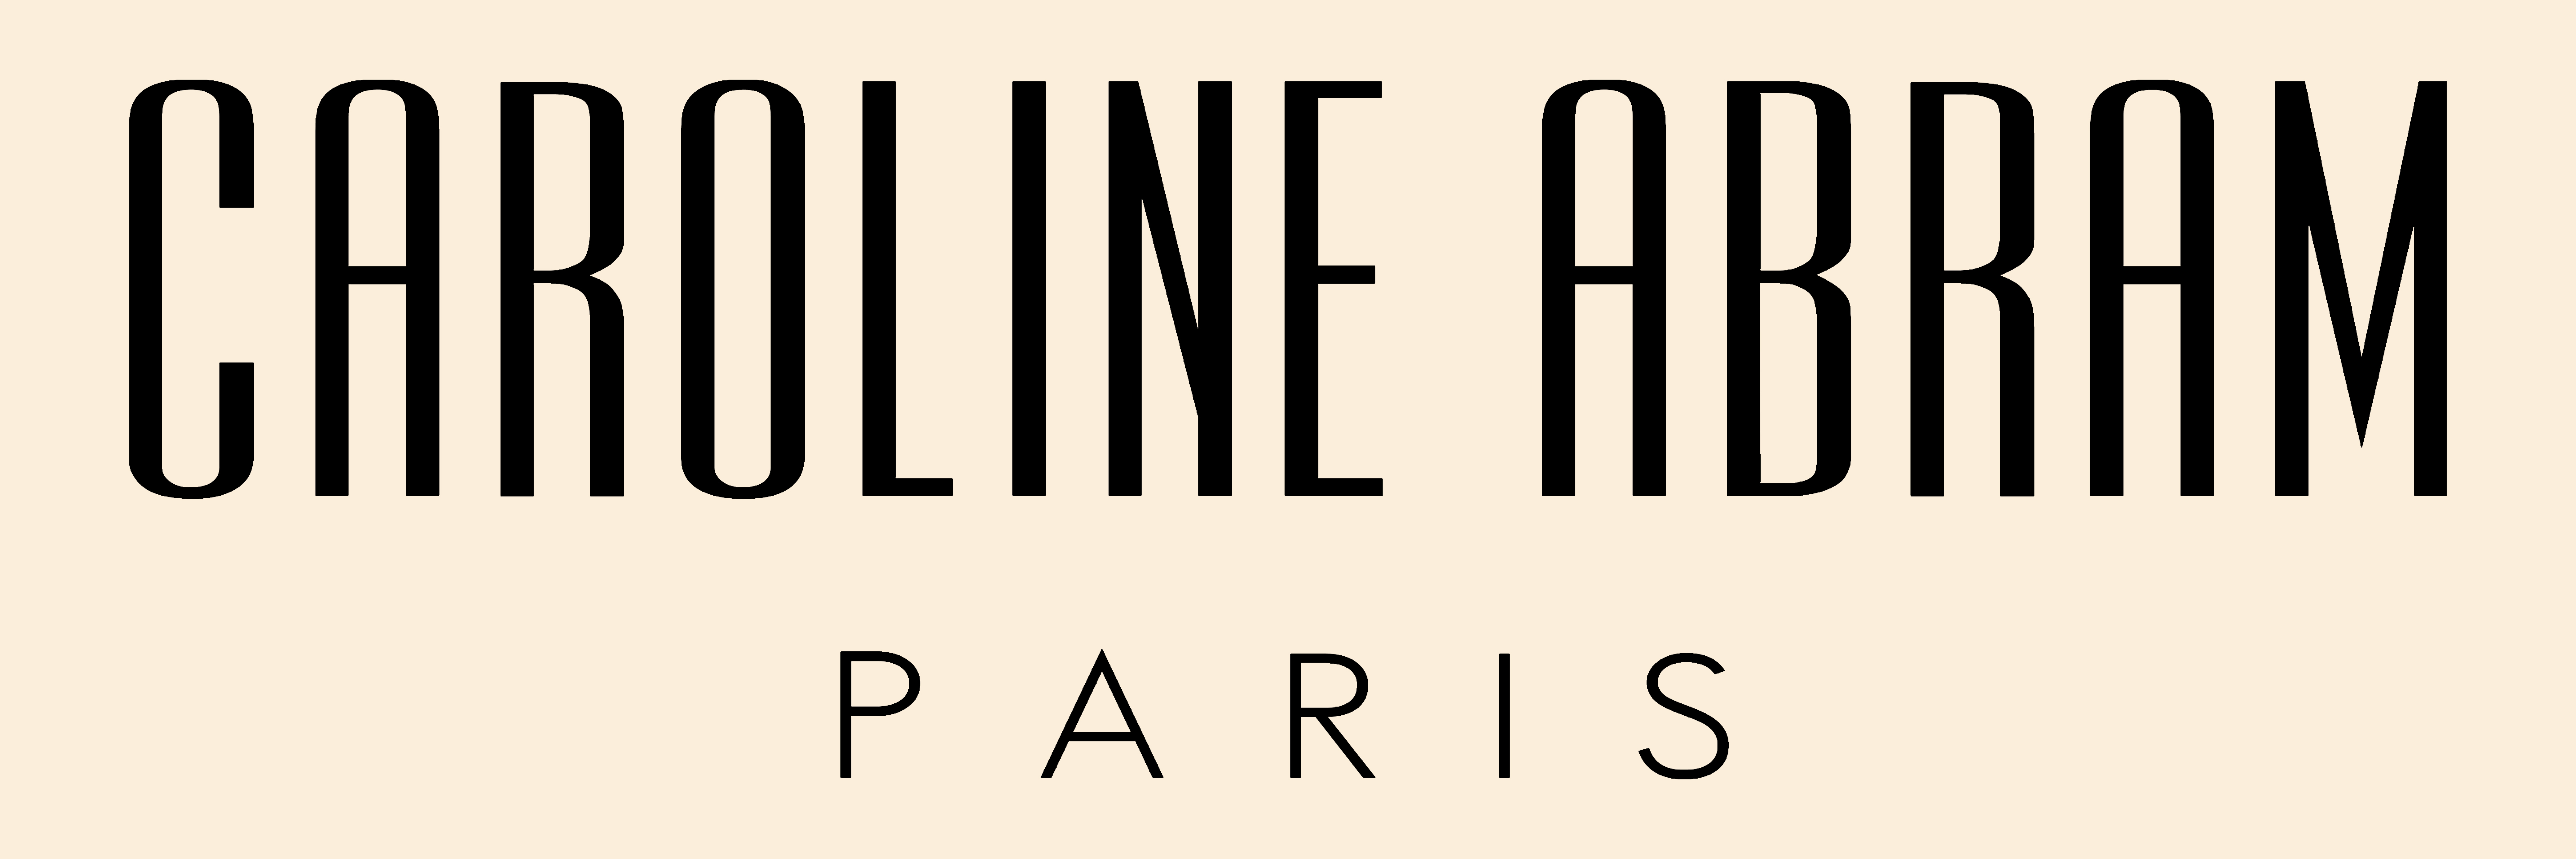 Caroline Abram Logo